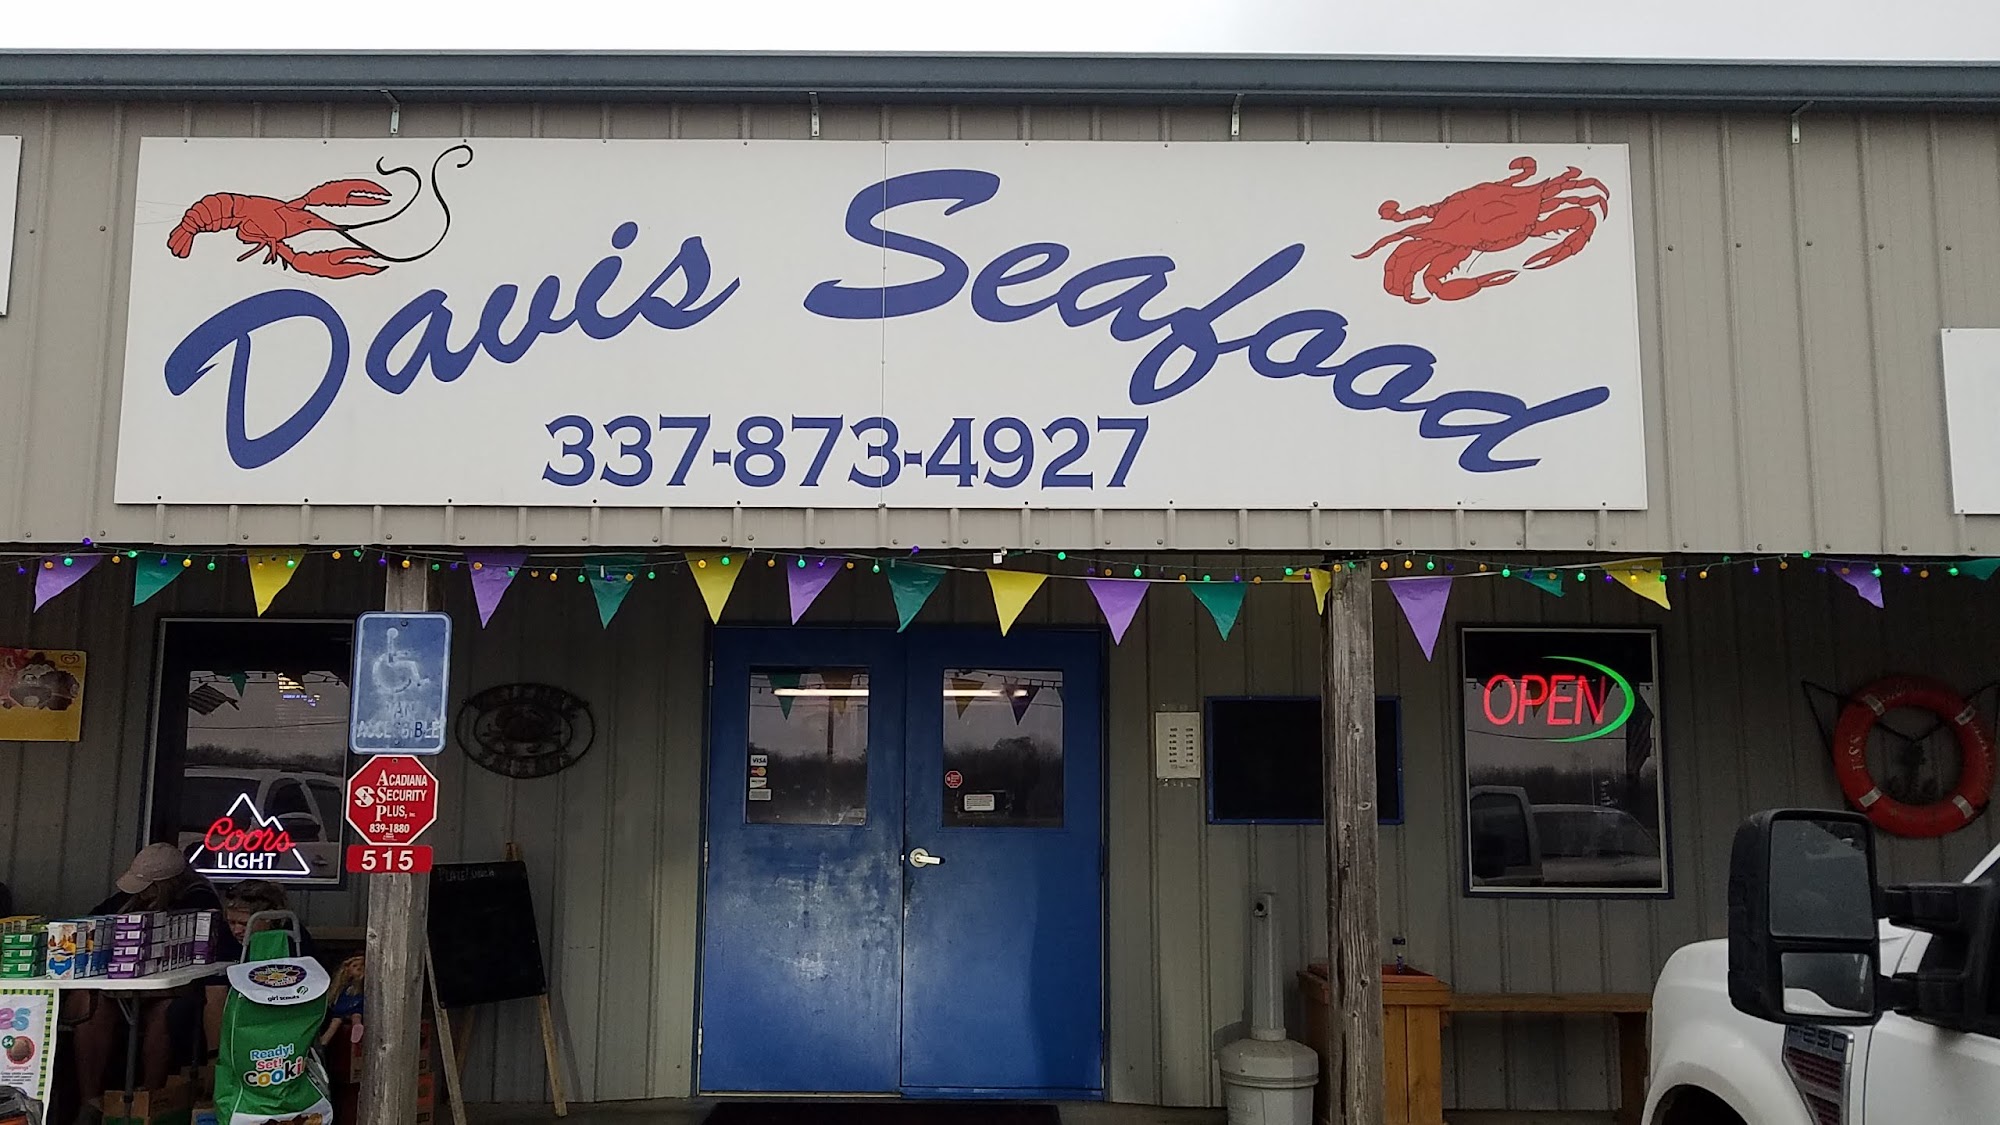 Davis Seafood